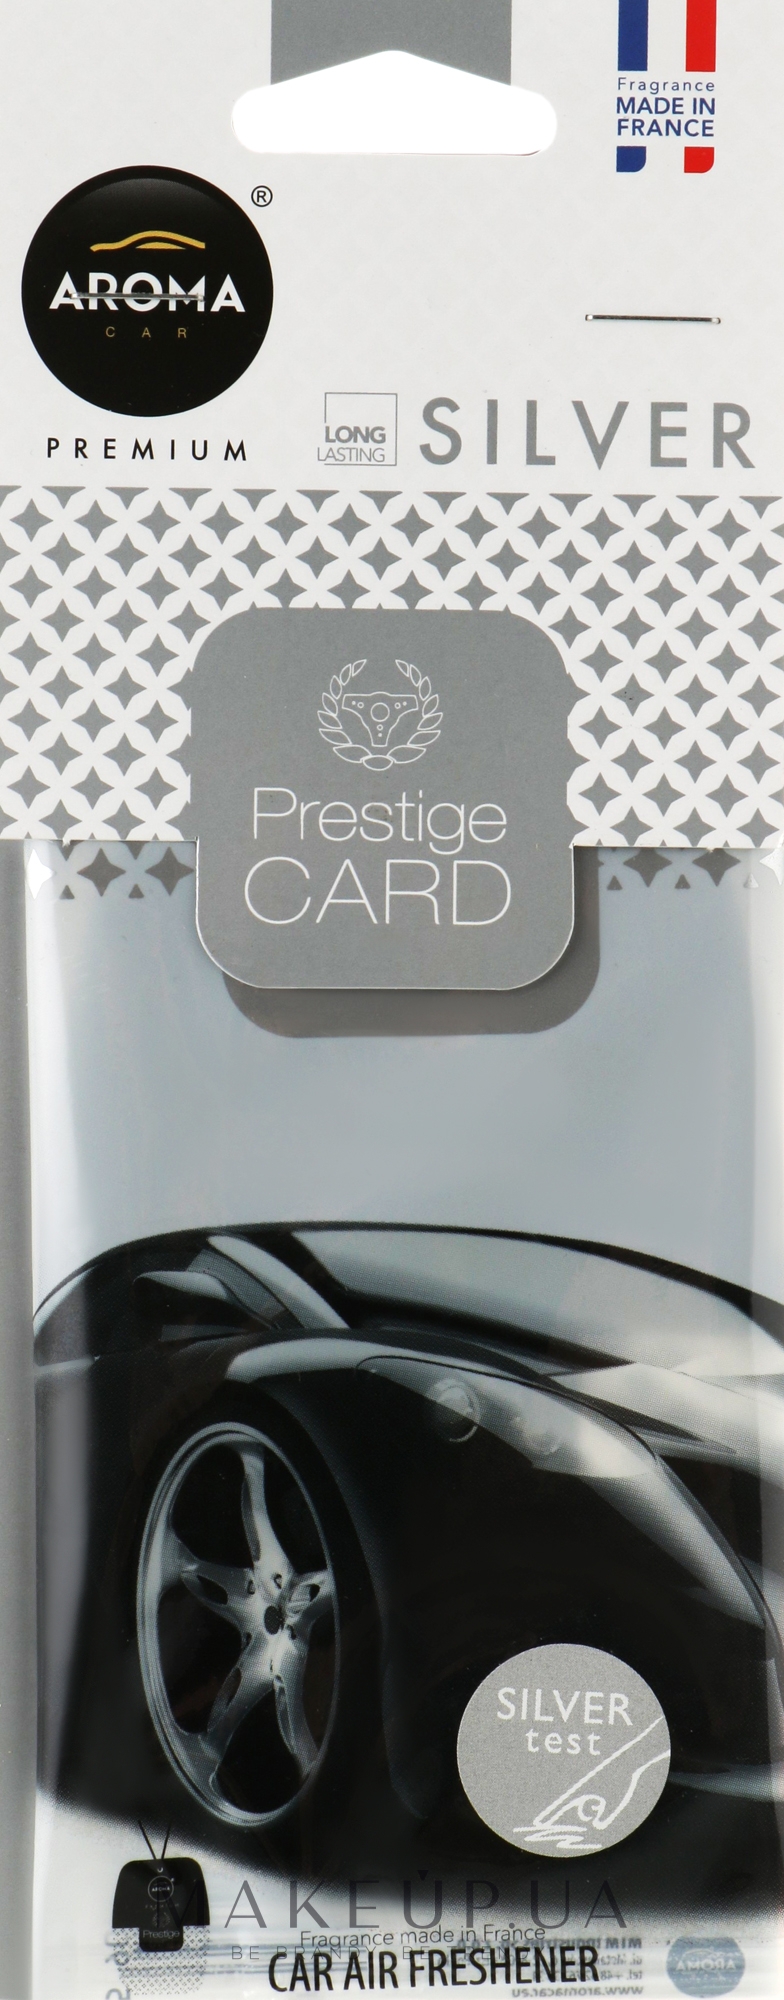 Ароматизатор с запахом целлюлозы "Silver" для авто - Aroma Car Prestige Card — фото 6g